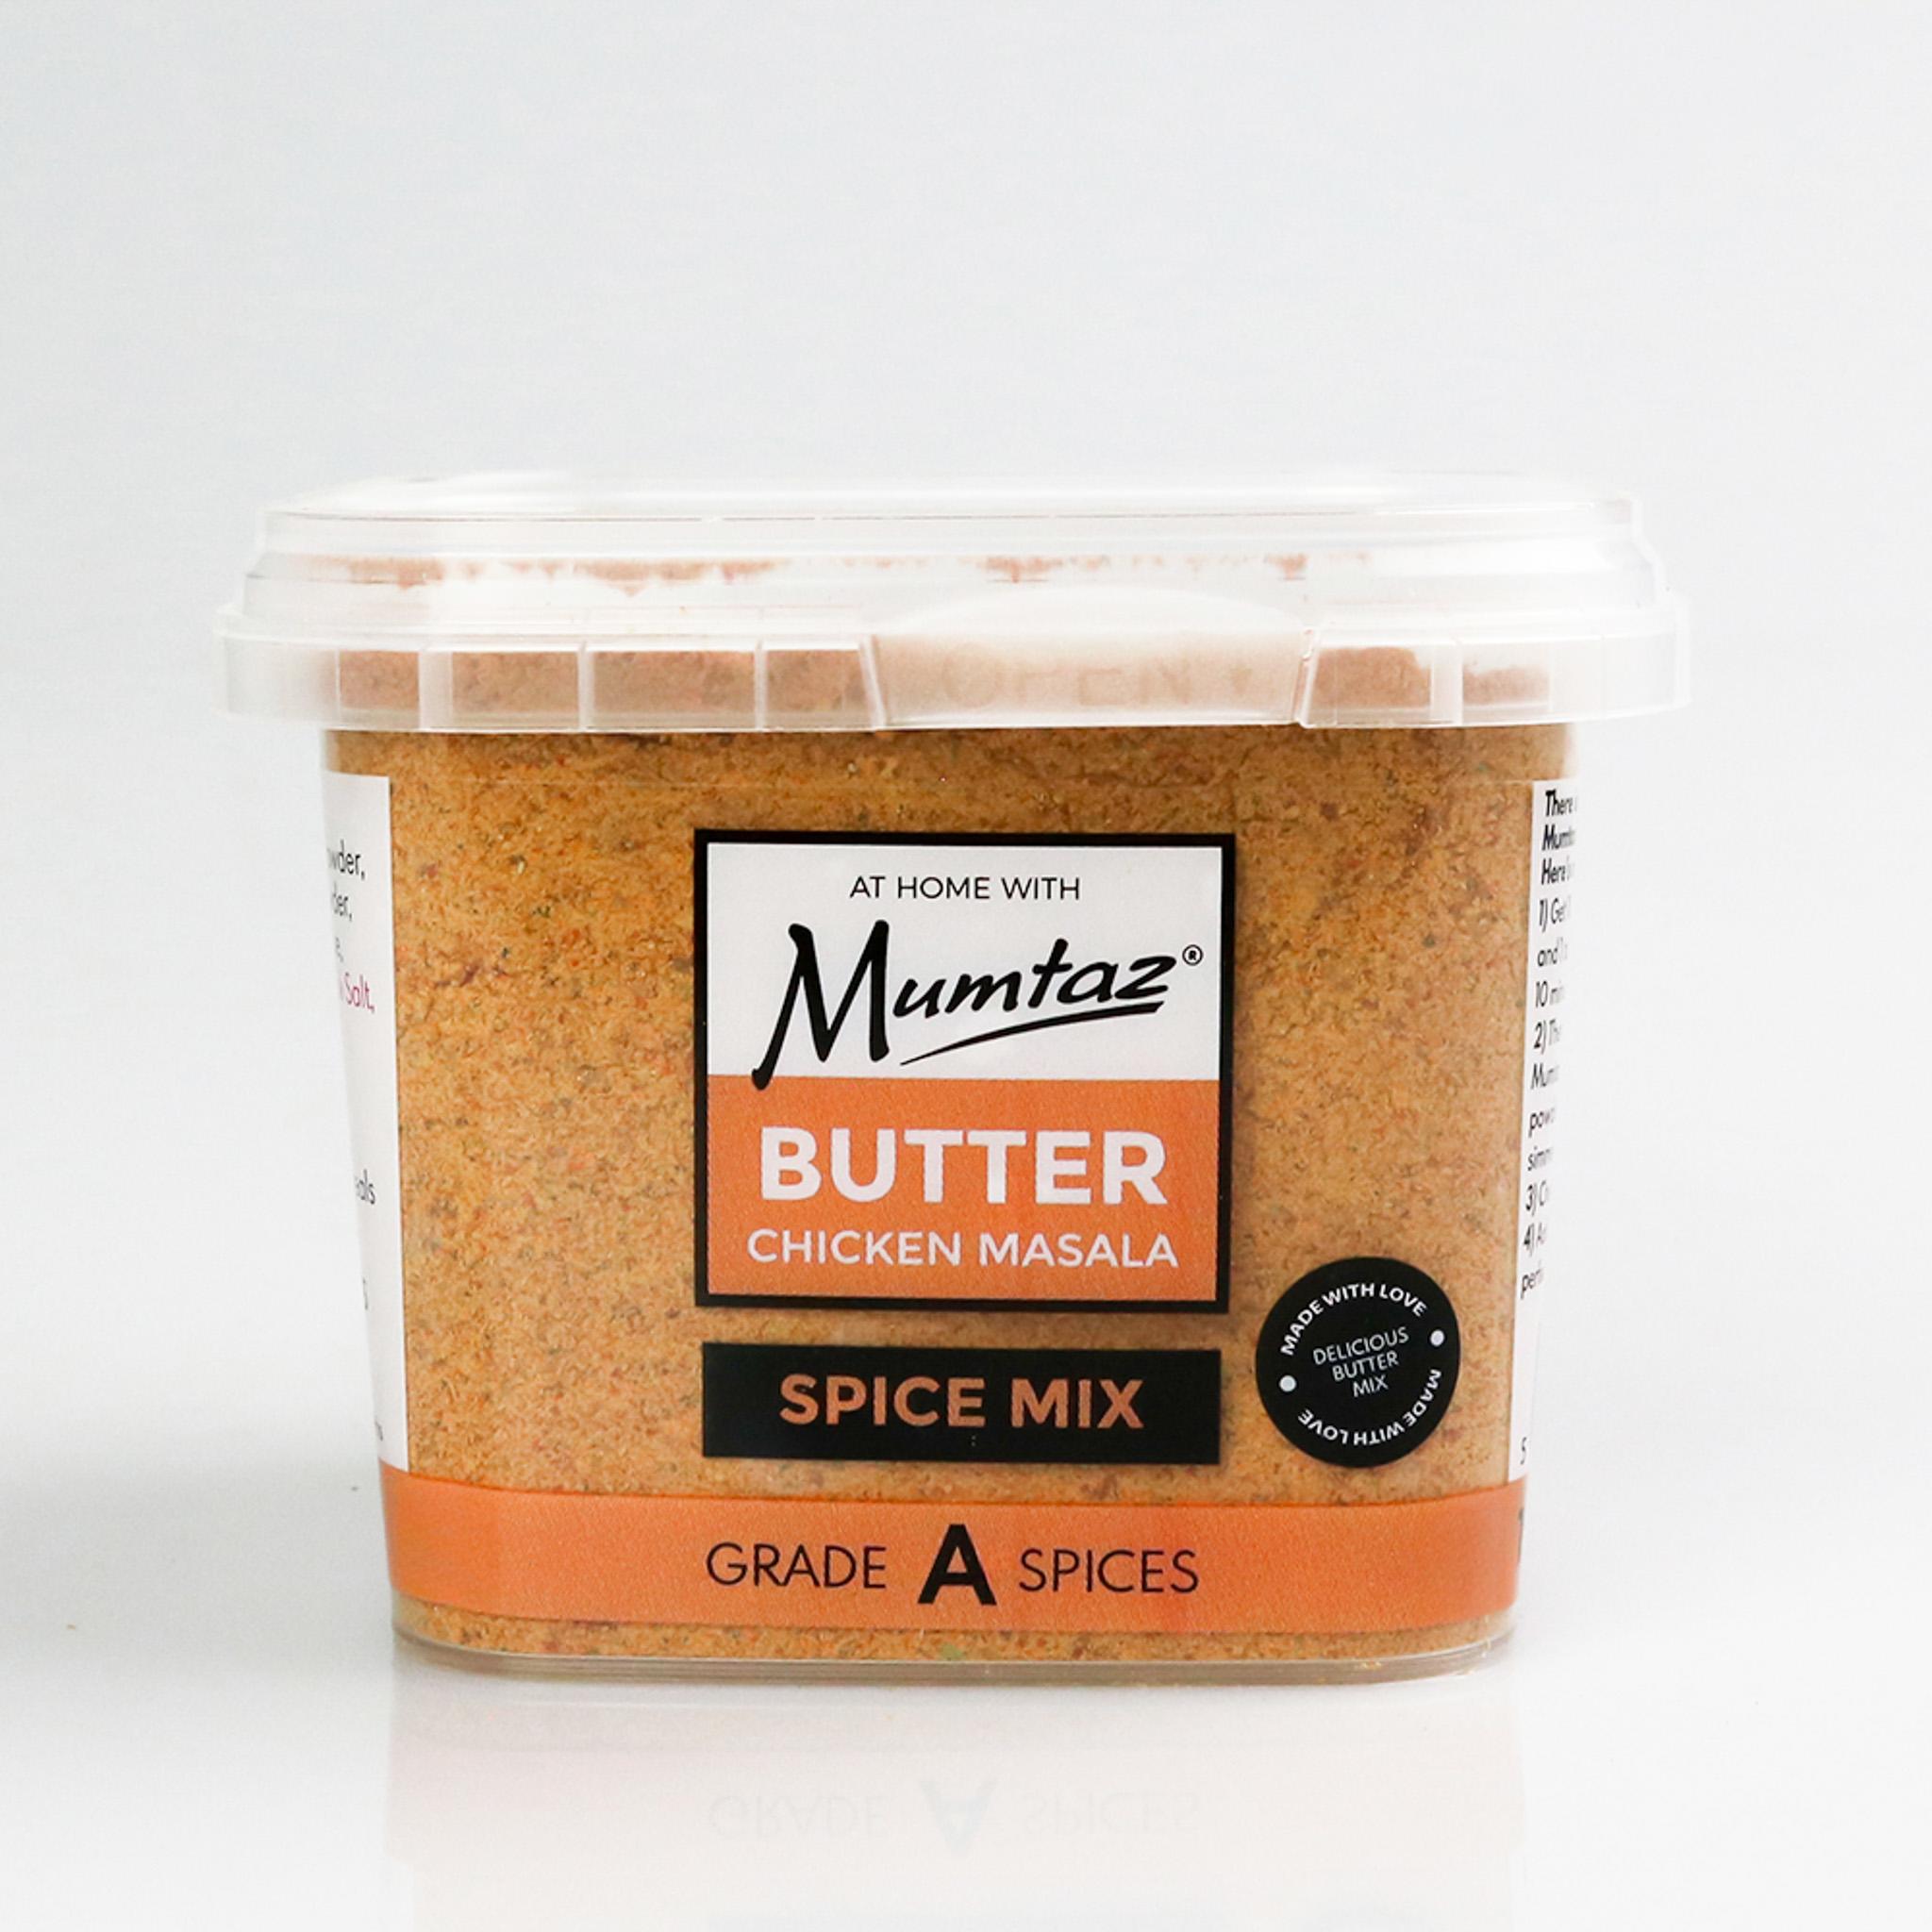 Mumtaz Butter Chicken Masala Spice Mix - 175g